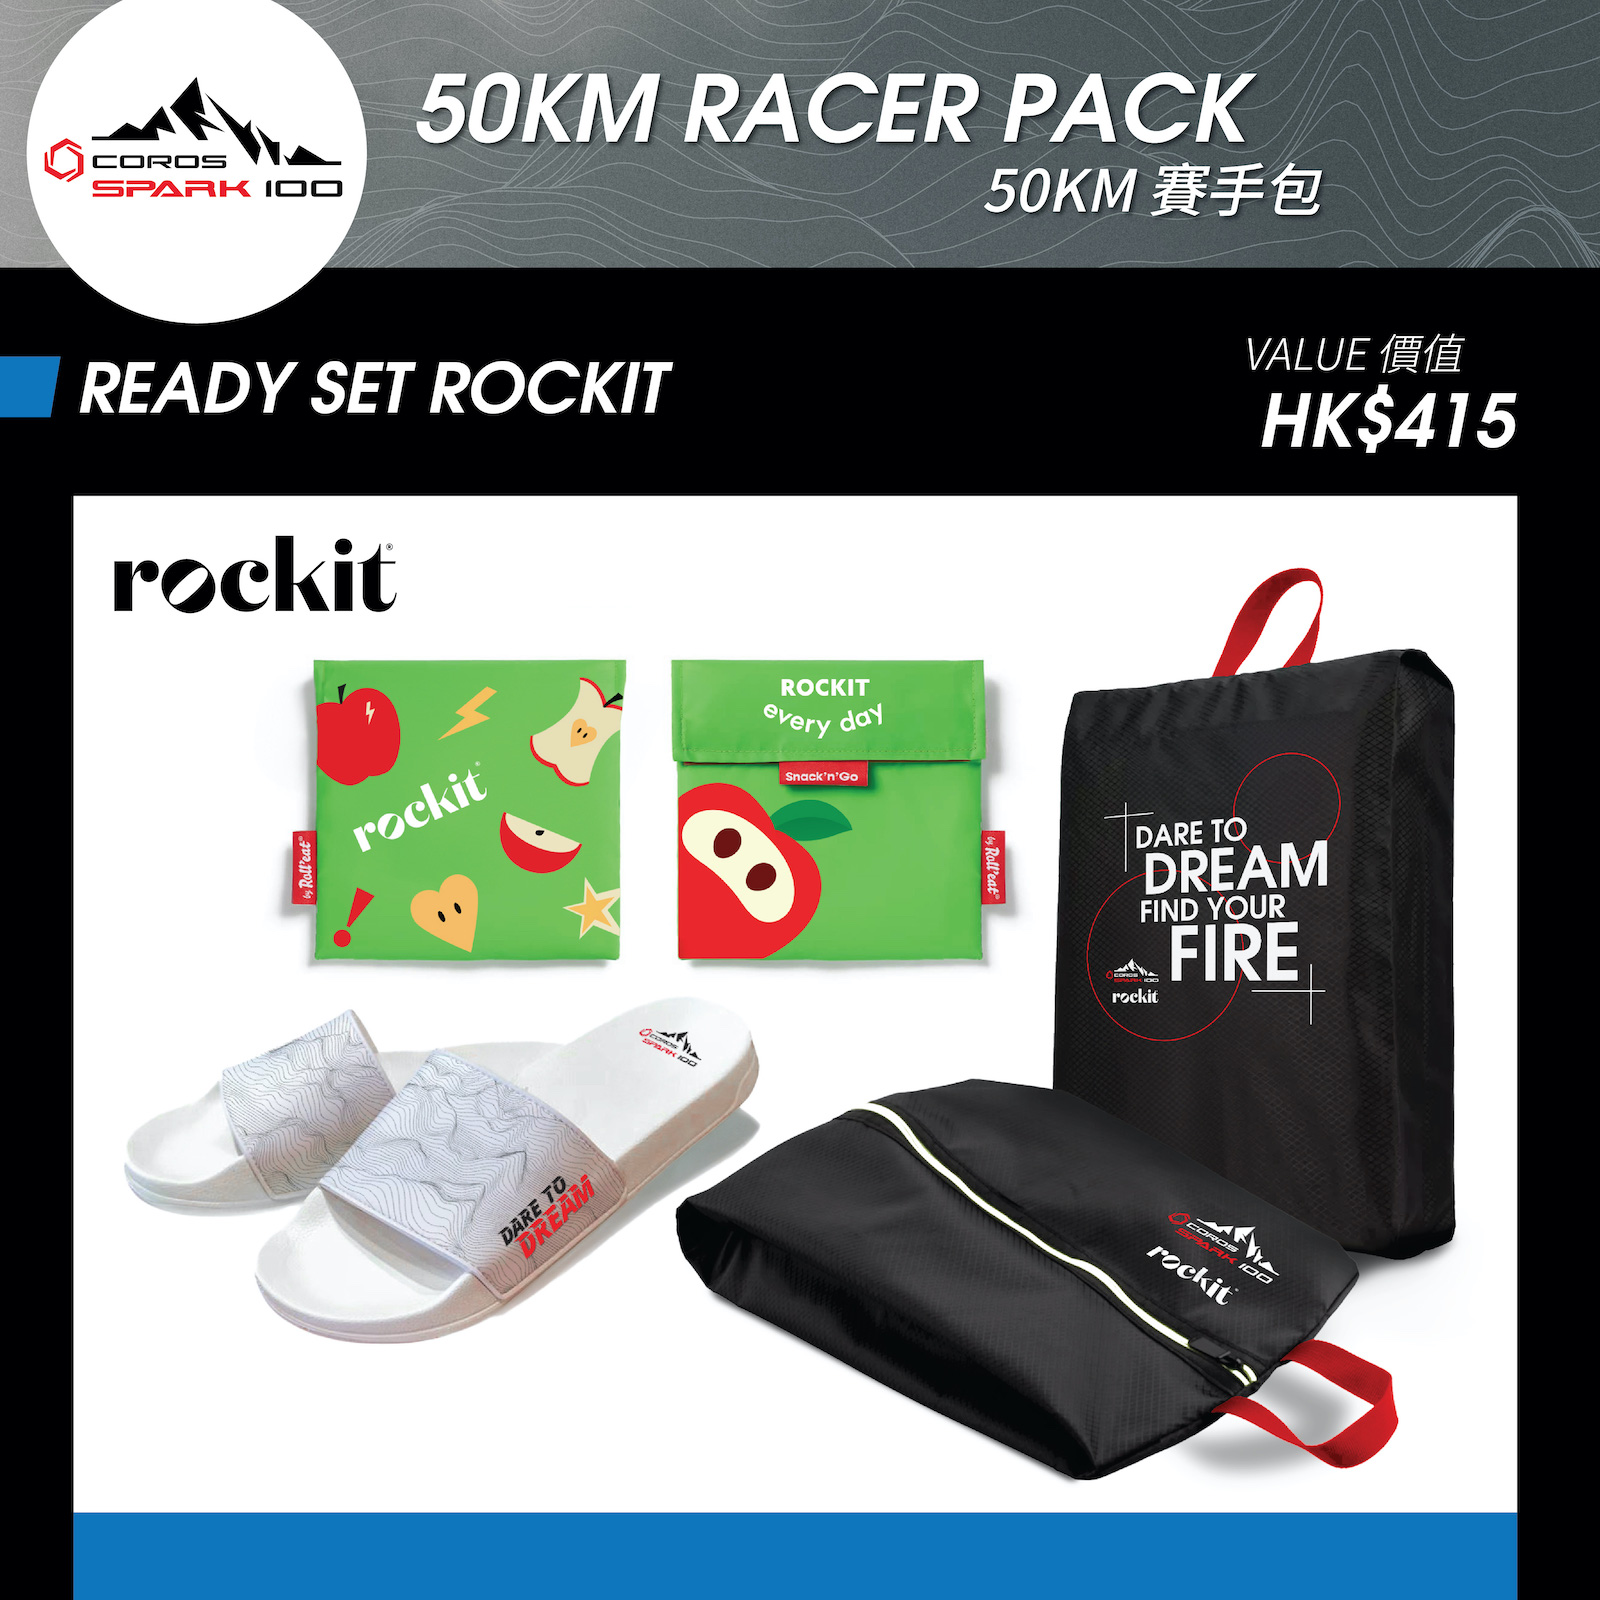 READY SET ROCKIT - 拖鞋 + 鞋袋 + 環保水果袋 (價值 HK$415)